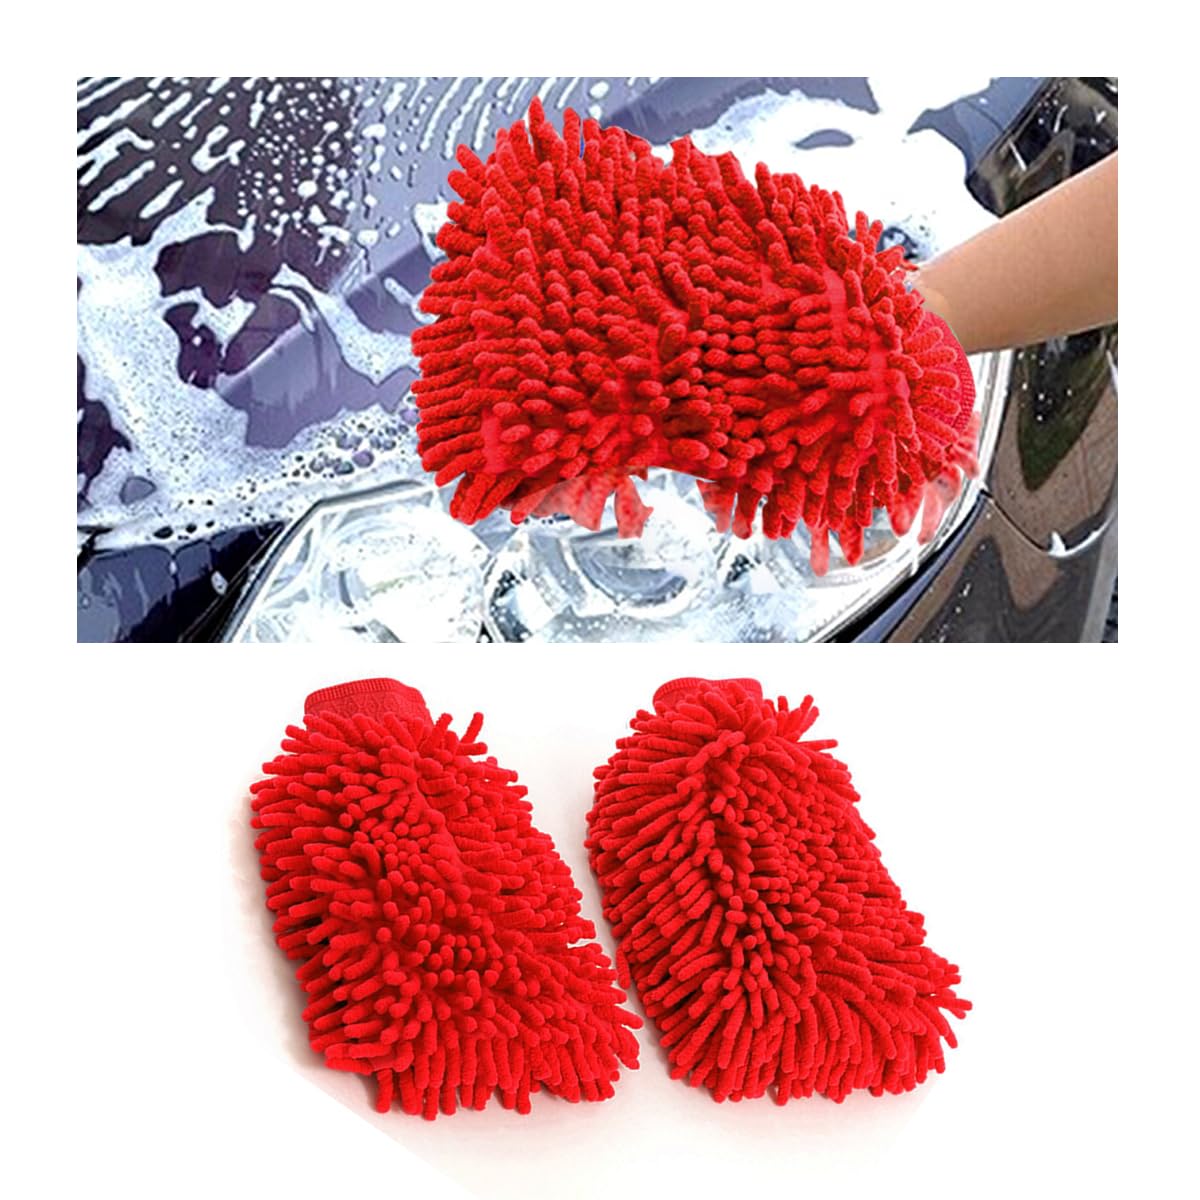 JNNJ 2 PCS Autowaschhandschuh, Mikrofaser Waschhandschuh Auto, Außen Zottel-Waschhandschuh für Professionelle Autopflege - 100% kratzfrei & schonend, Entfernt Mühelos hartnäckigen Schmutz(Rot) von JNNJ